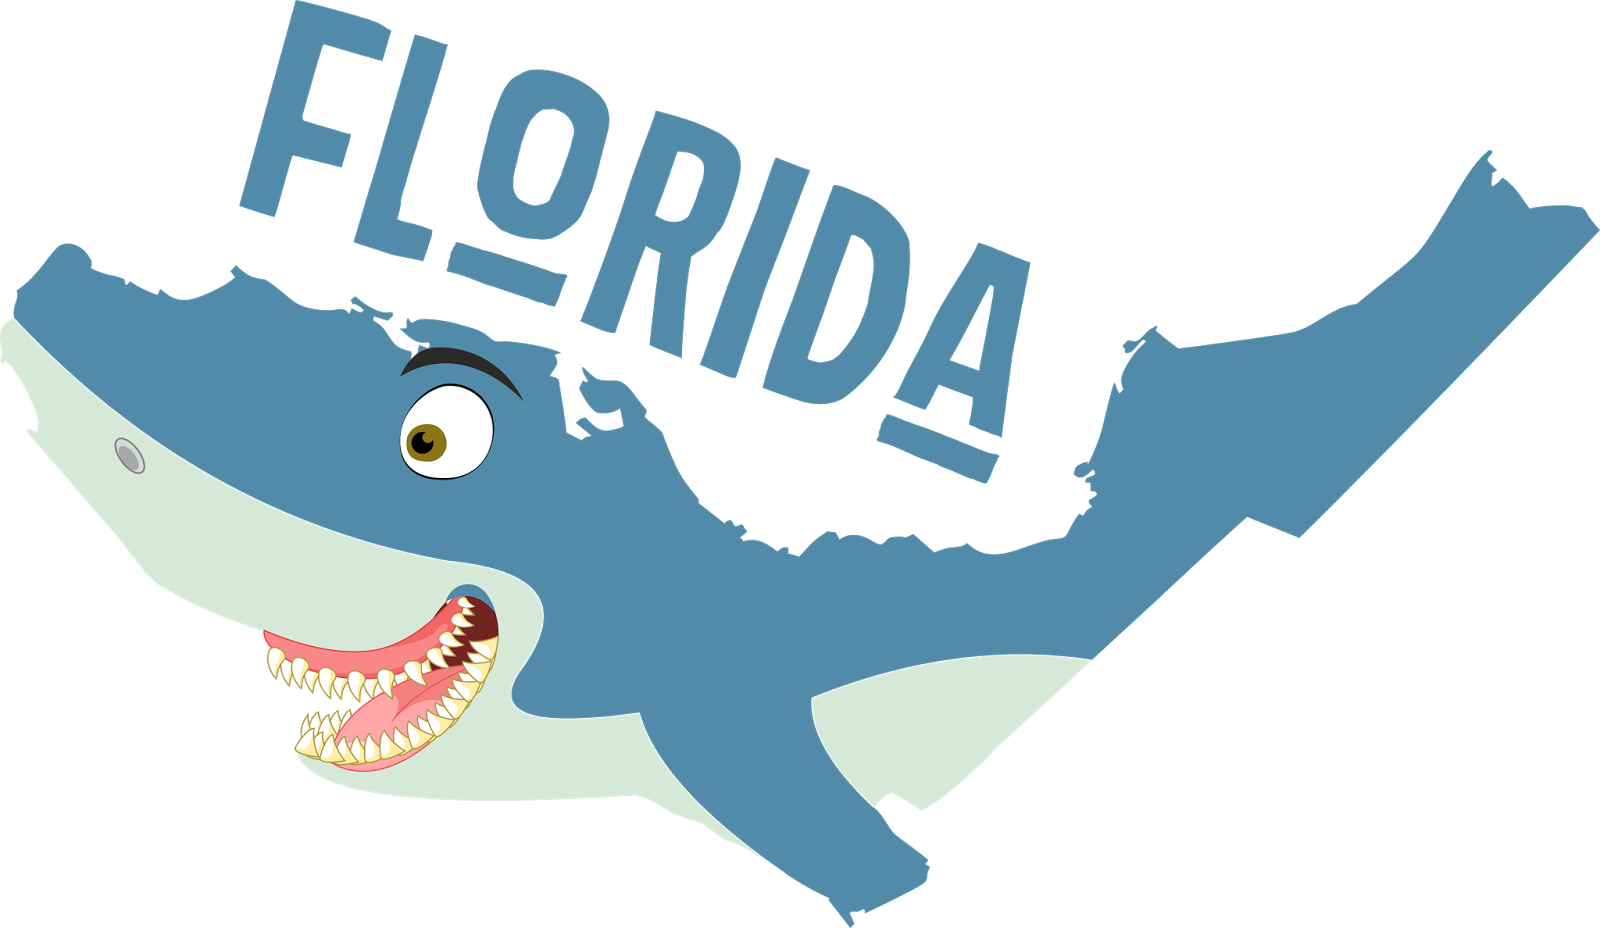 A Funny Map Of Florida - A Funny Map Of Florida (1600x928)